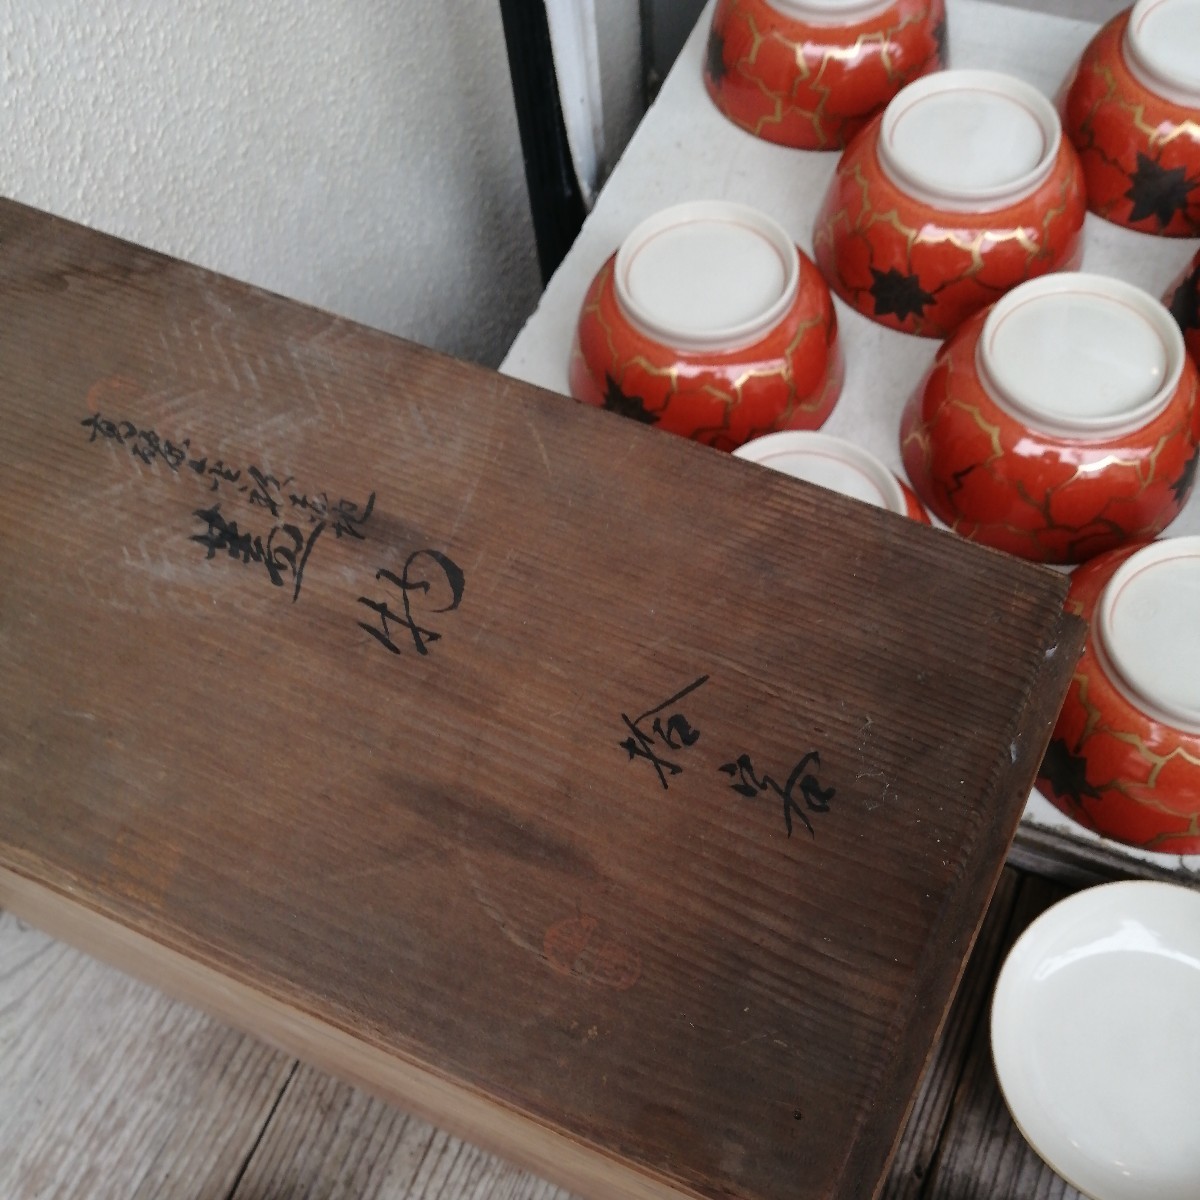  крышка есть чашка Goryeo красный . чашка Kyoyaki антиквариат . камень кулинария . сиденье сервировочный поднос прекрасный товар крышка предмет 10 покупатель дерево коробка Zaimei 